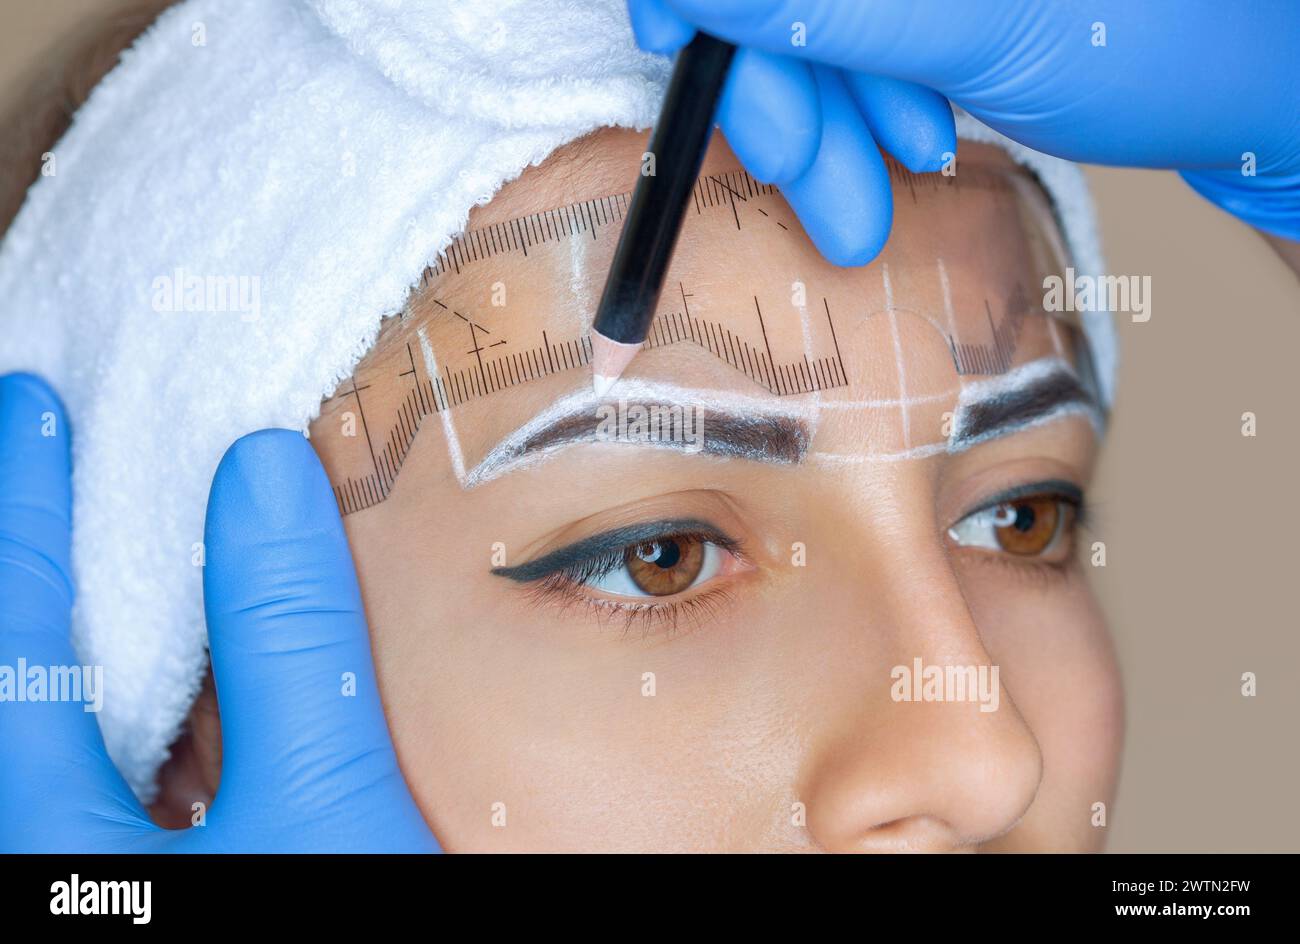 Permanent Make-up für Augenbrauen einer schönen Frau mit dicken Augenbrauen im Schönheitssalon. Nahaufnahme-Kosmetikerin, die Augenbrauen tätowiert. Stockfoto